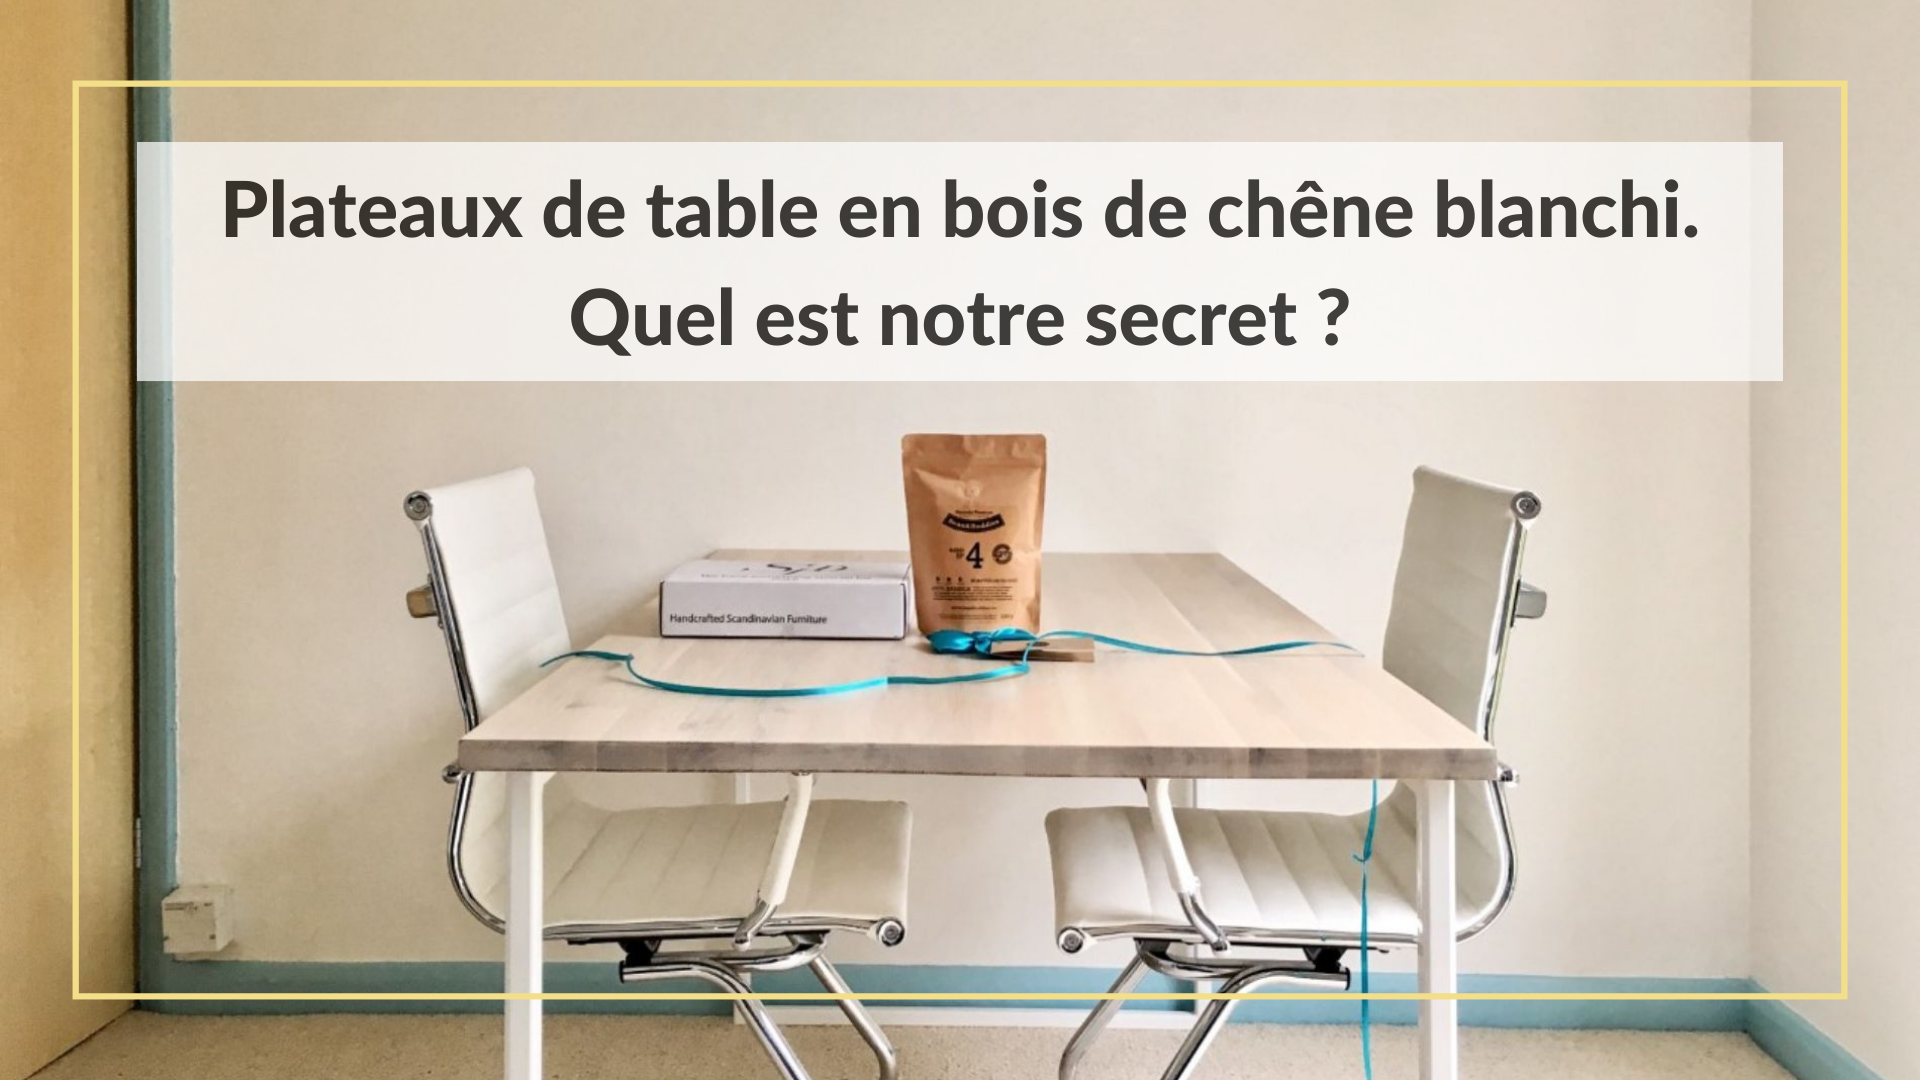 Plateaux de table en bois de chêne blanchi : quel est notre secret ?